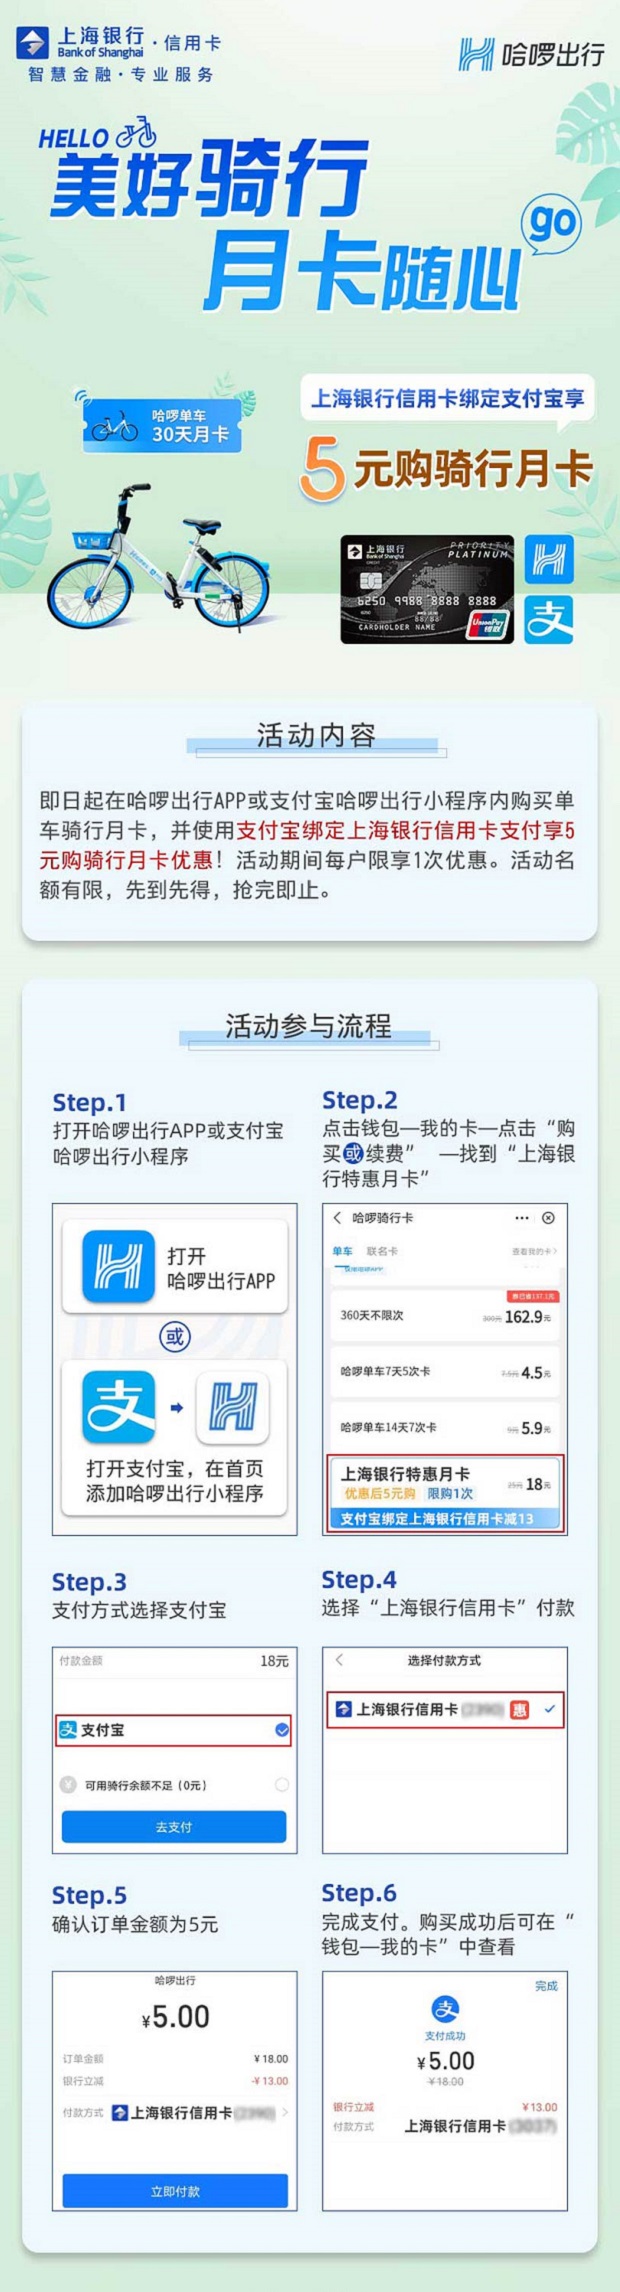 2021年5月9日上海银行信用卡优惠活动推荐